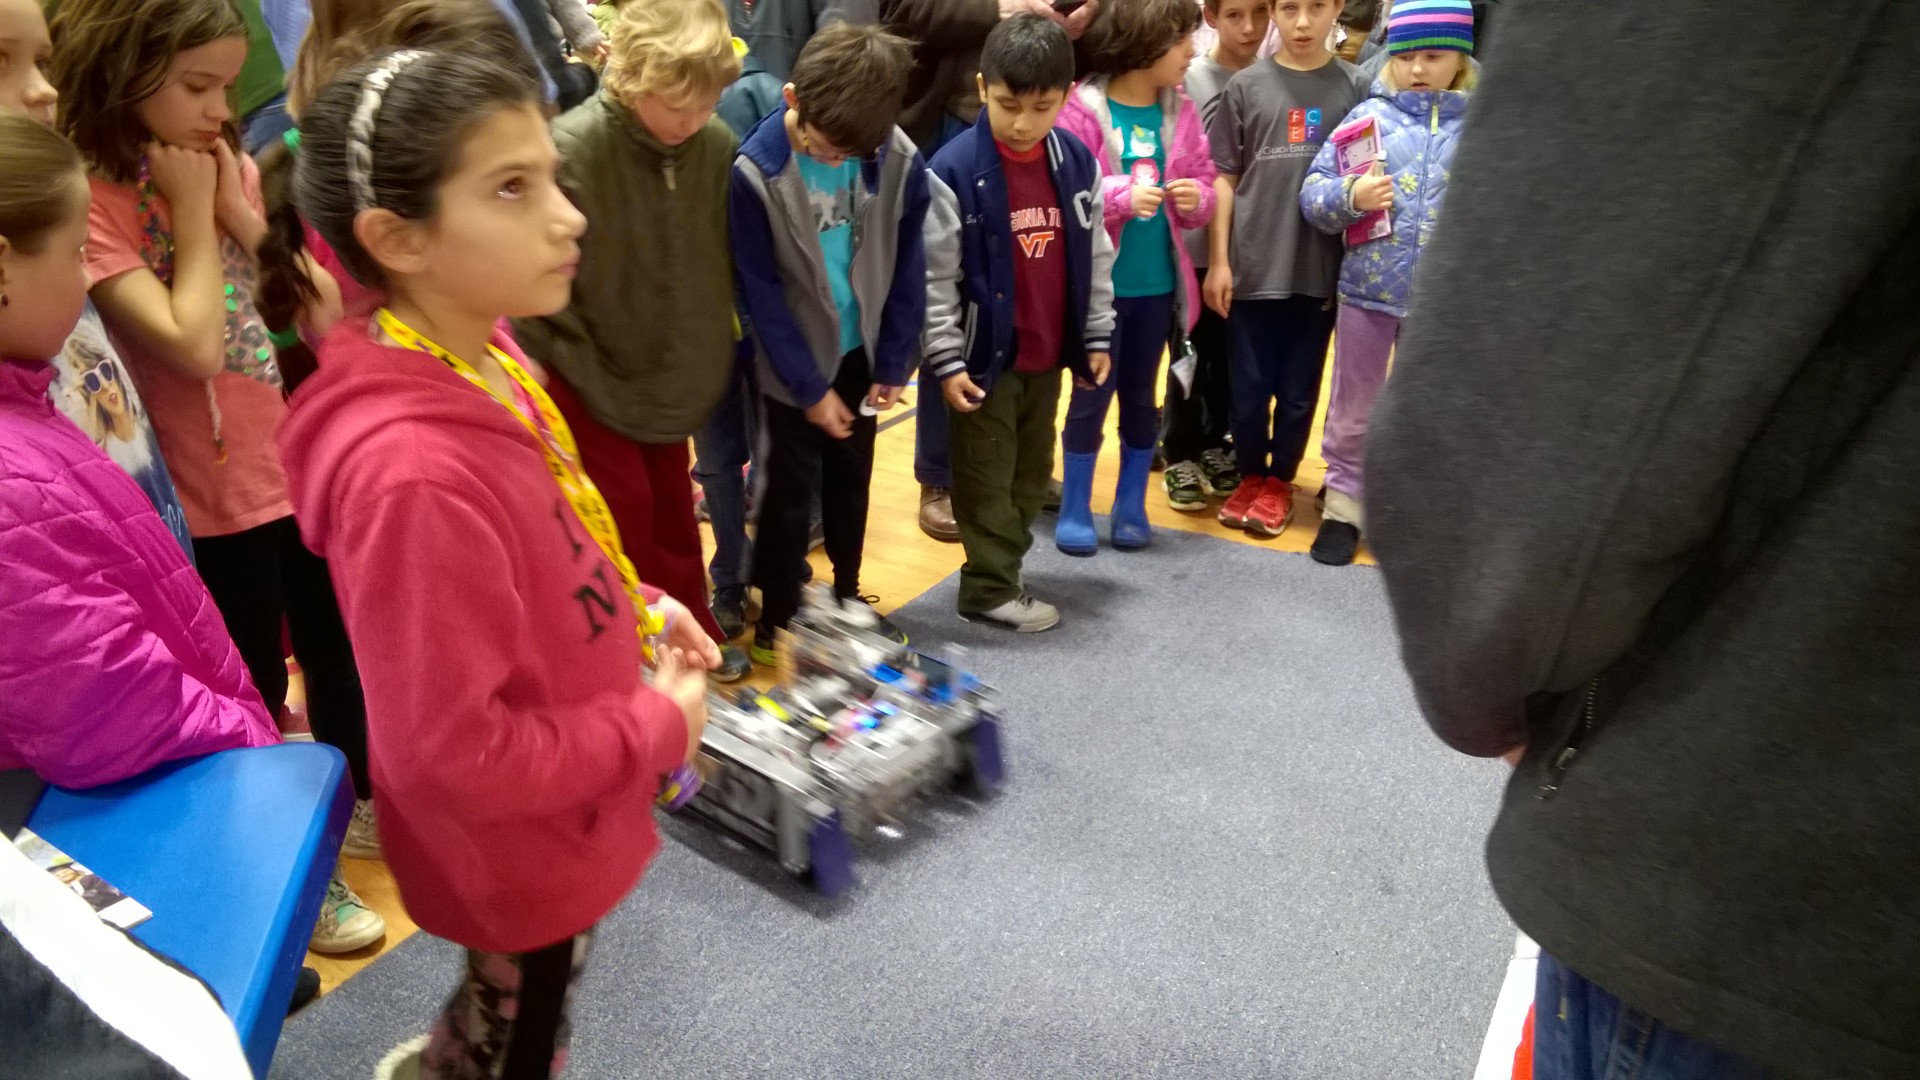 A crowd of children around the robot.